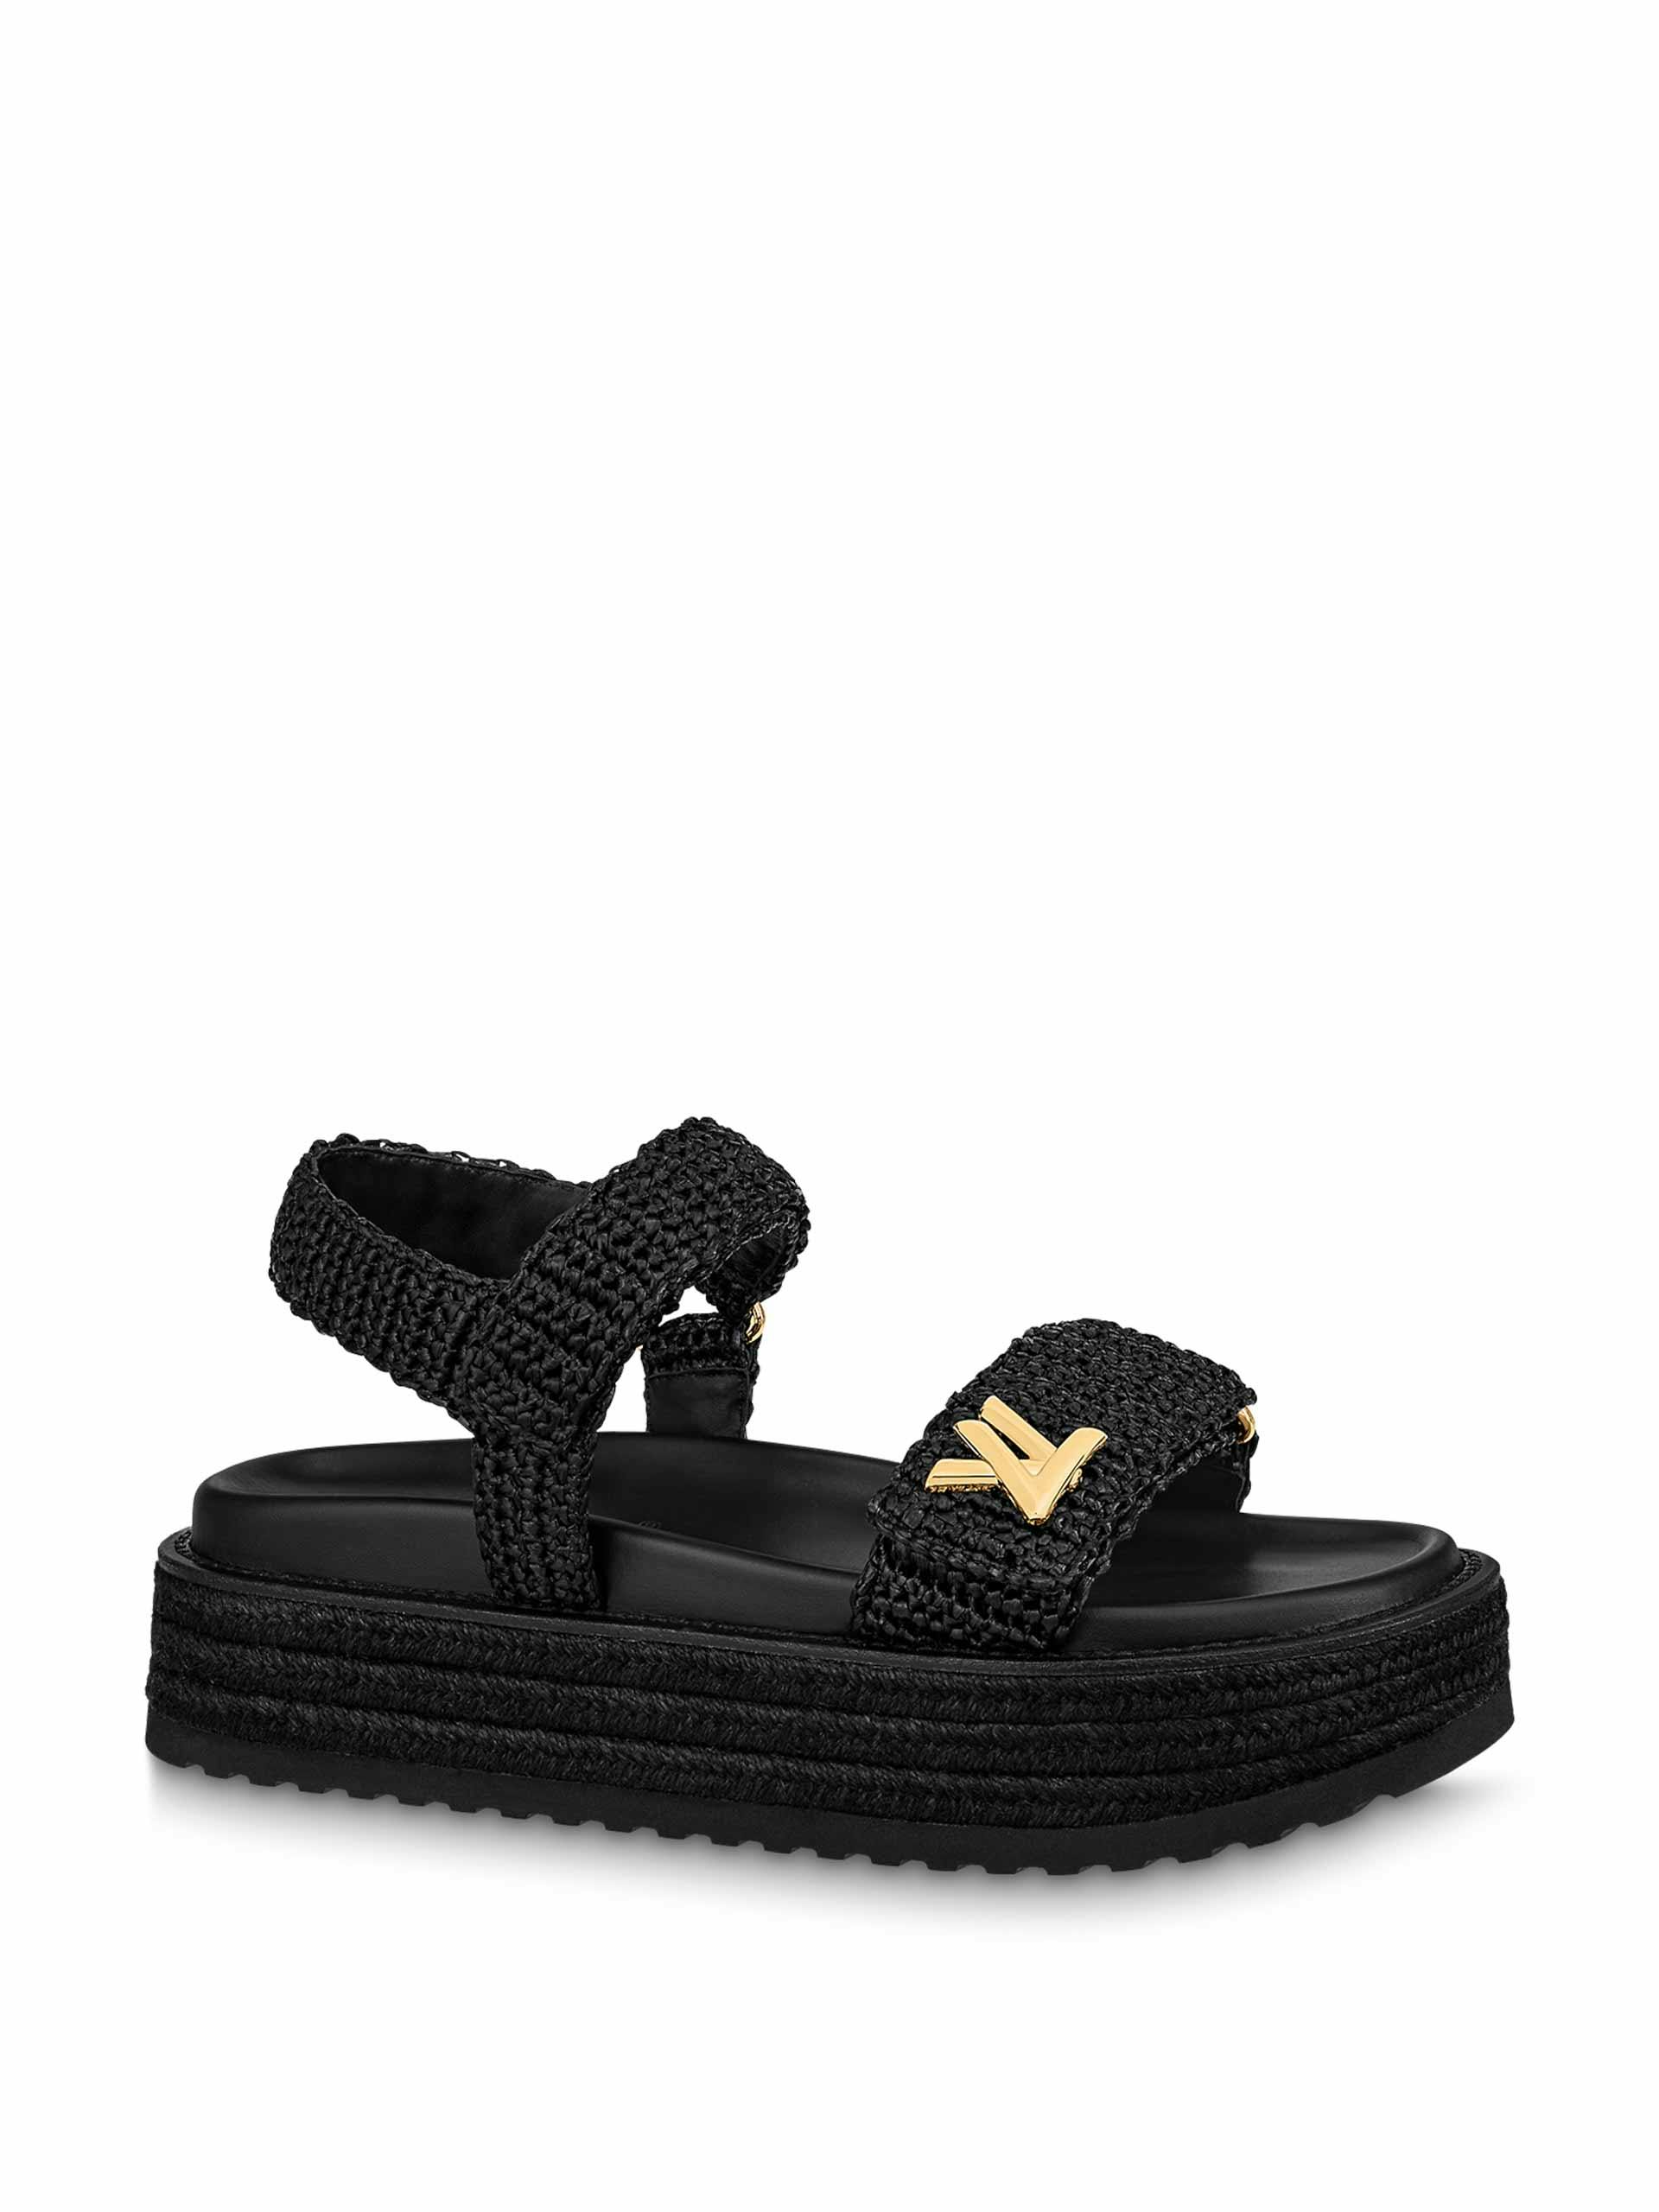 Black flat comfort sandals